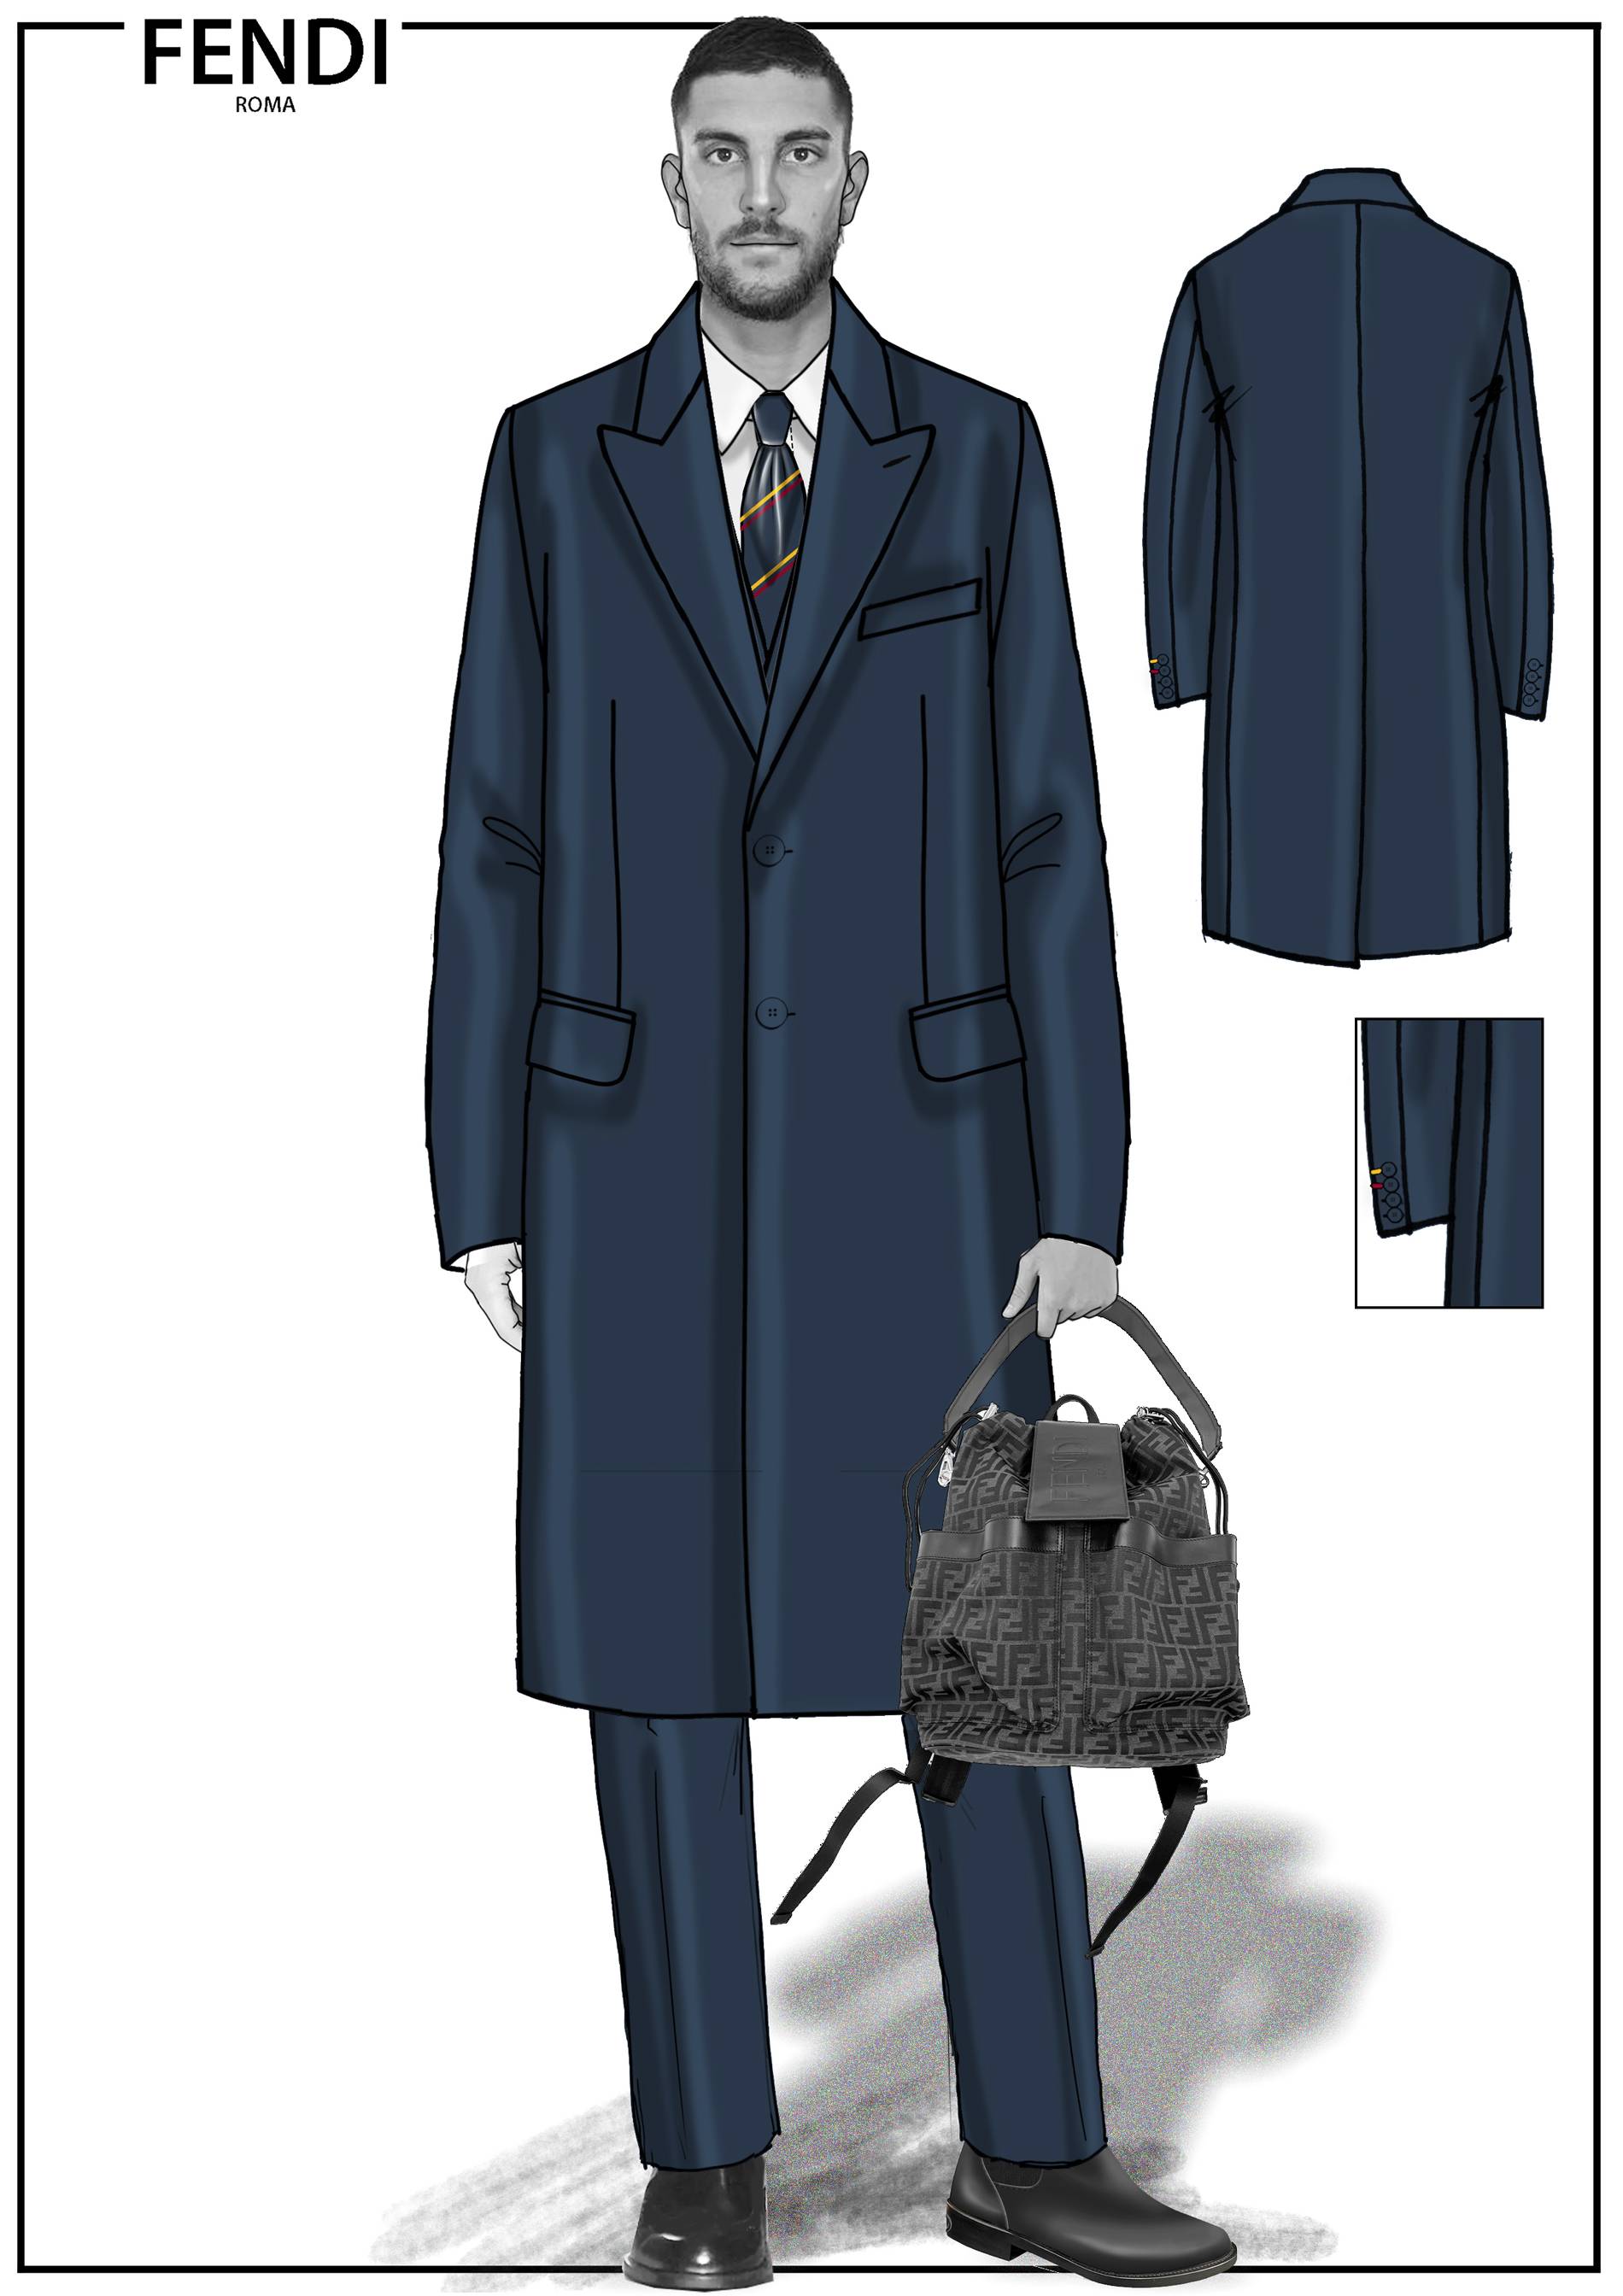 FENDI x AS Roma Lorenzo Pellegrini suit coat sketch